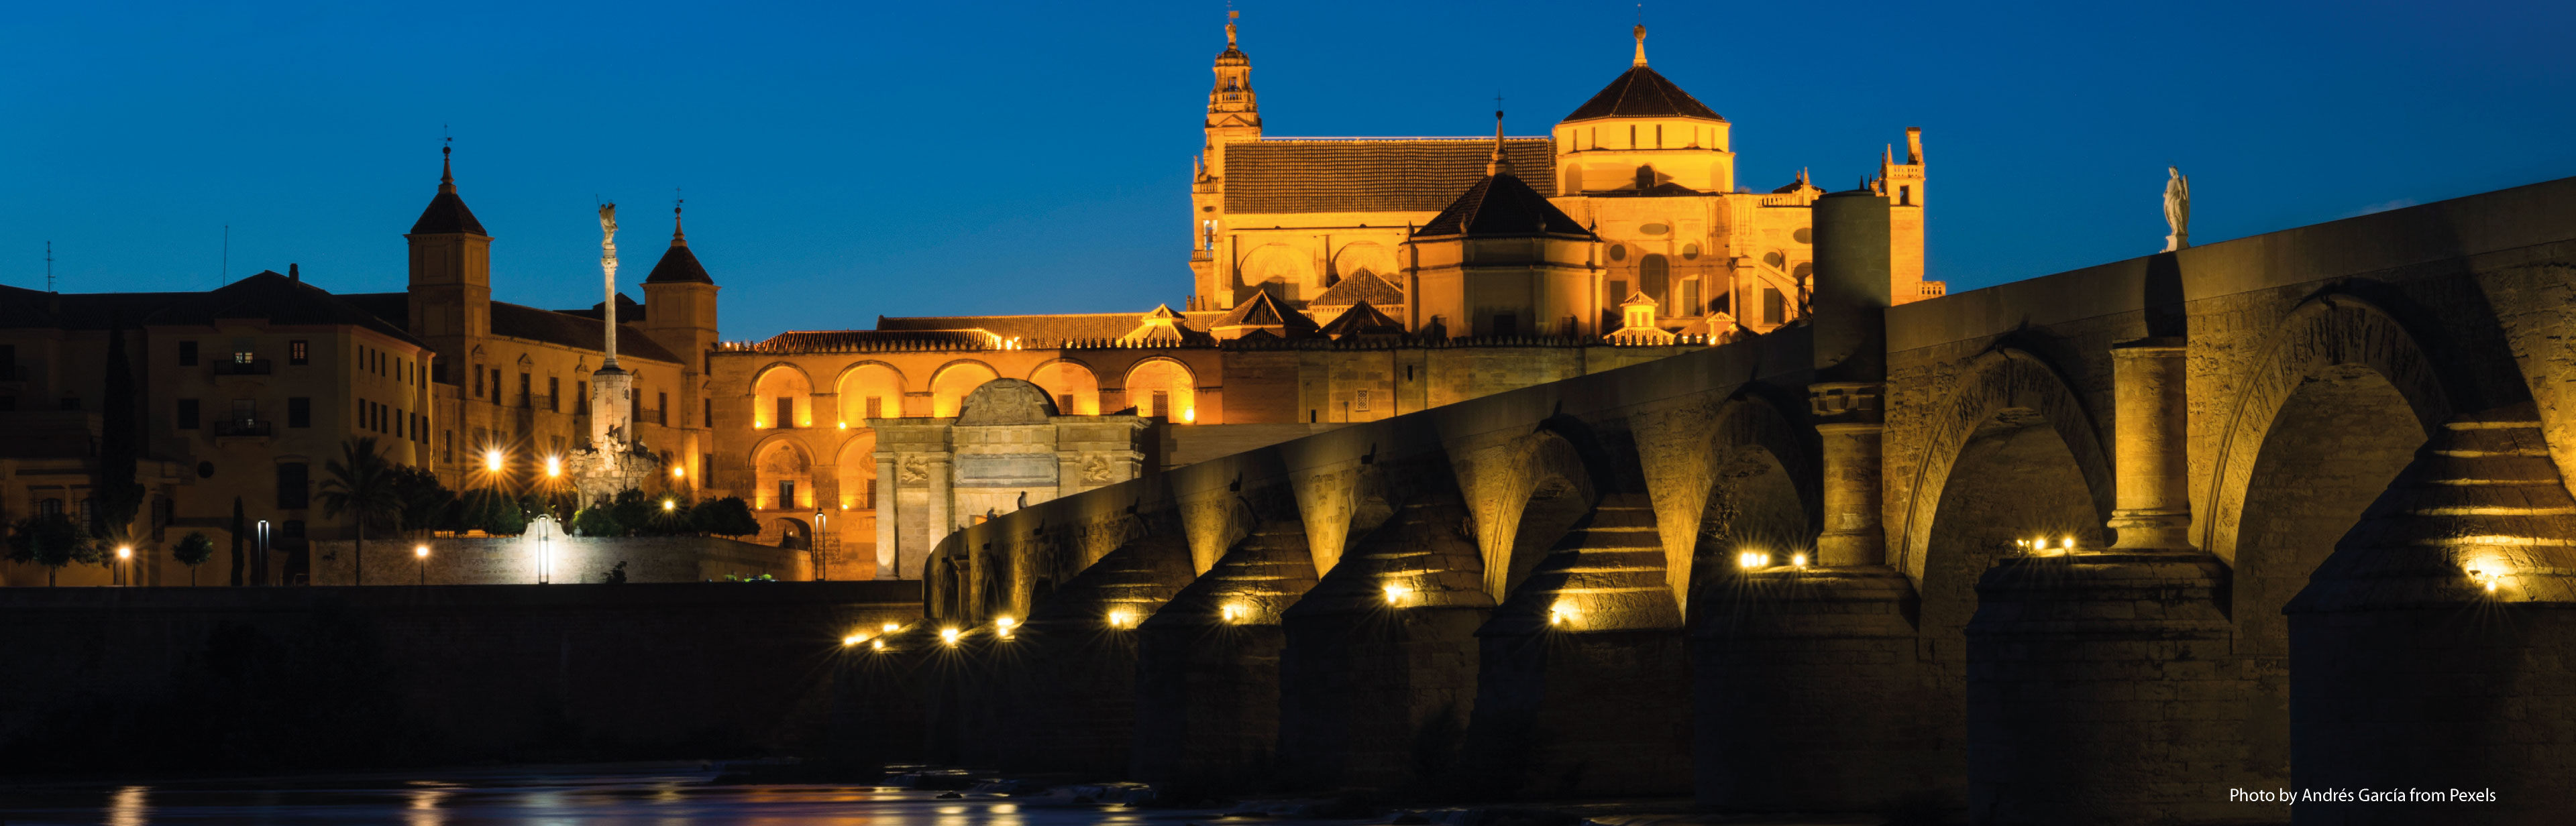 Romeinse brug in het centrum van Córdoba over de Guadalquivir rivier, op 2 uur rijden